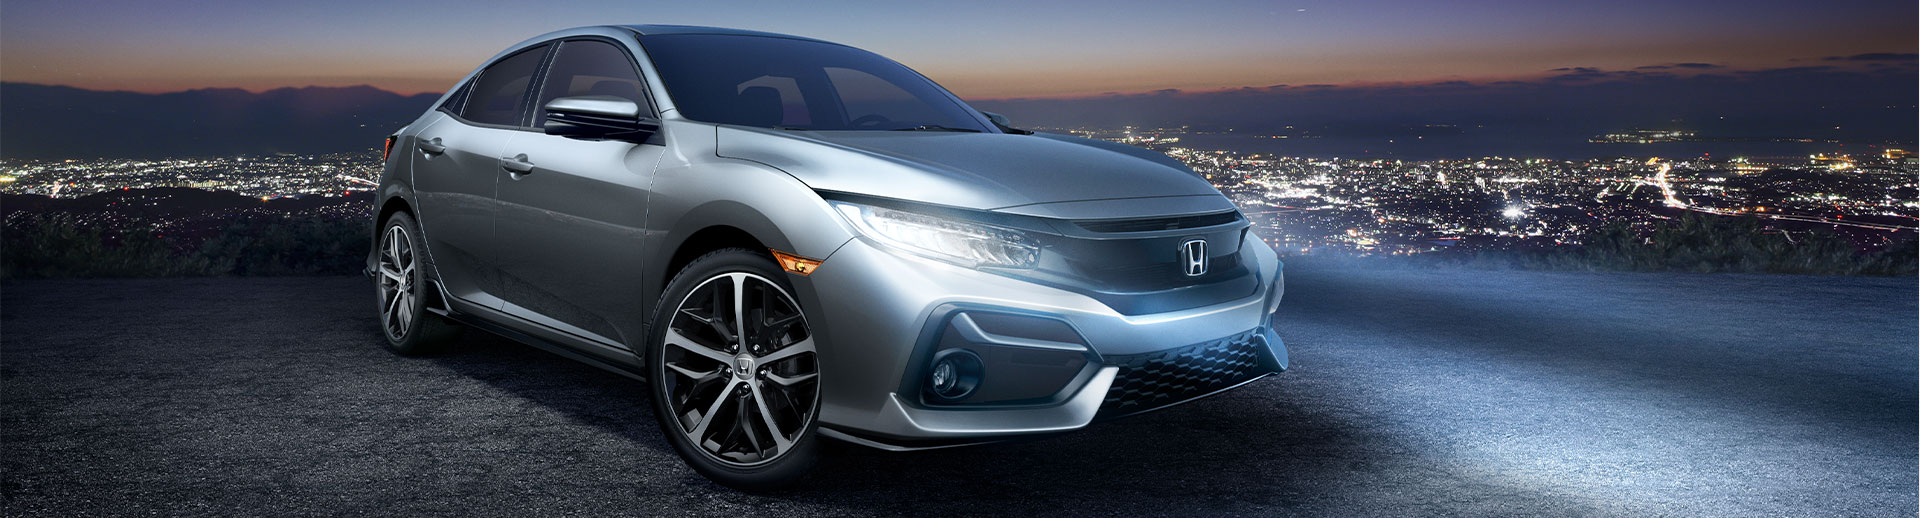 2021 Honda Civic Hatchback Lifestyle Photo